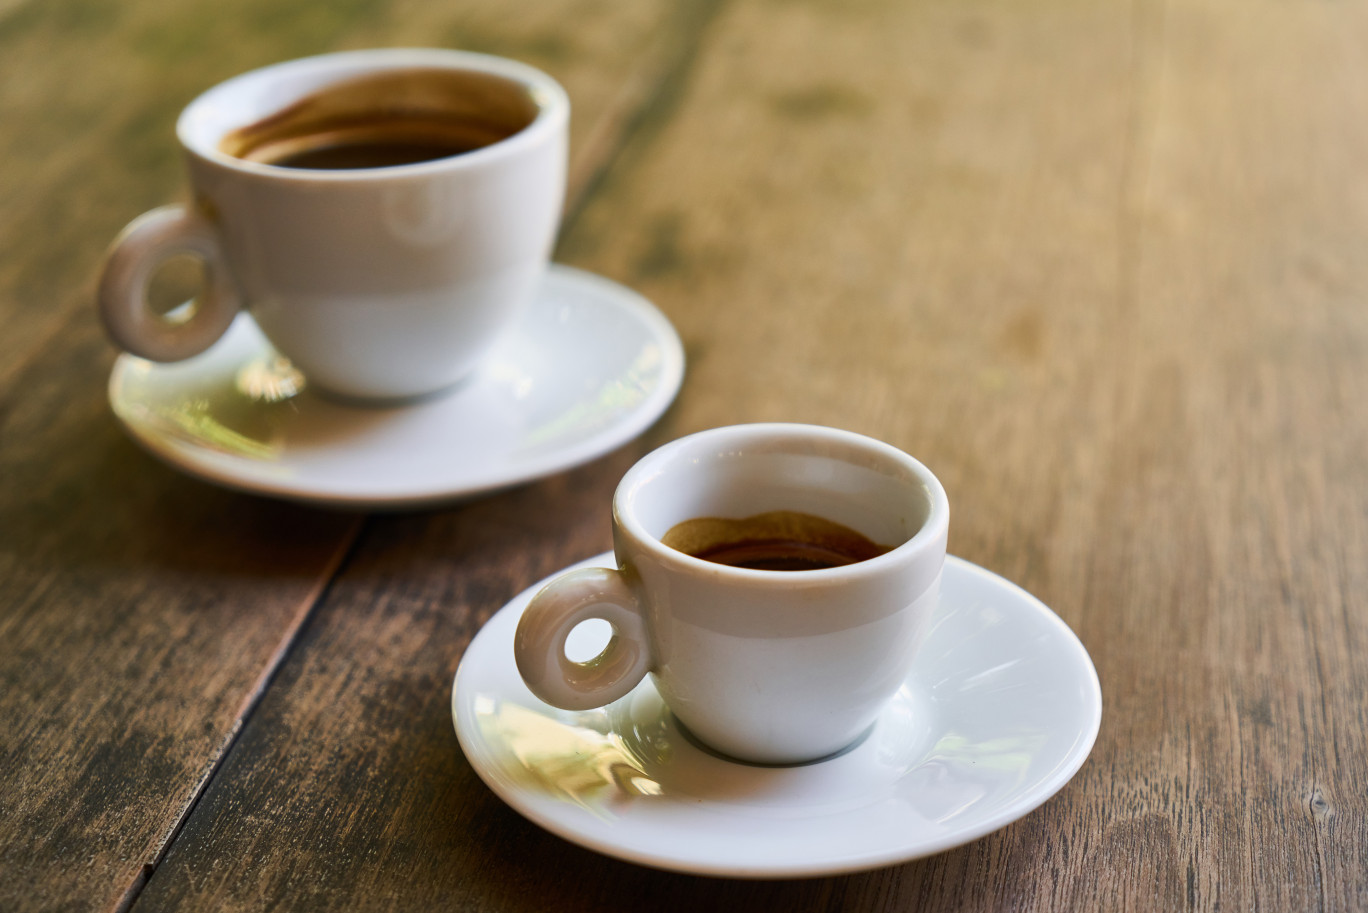 Le café suspendu, de l'italien "caffè sospeso", est une tradition solidaire tout droit venue de la ville de Naples. (© Pixabay)